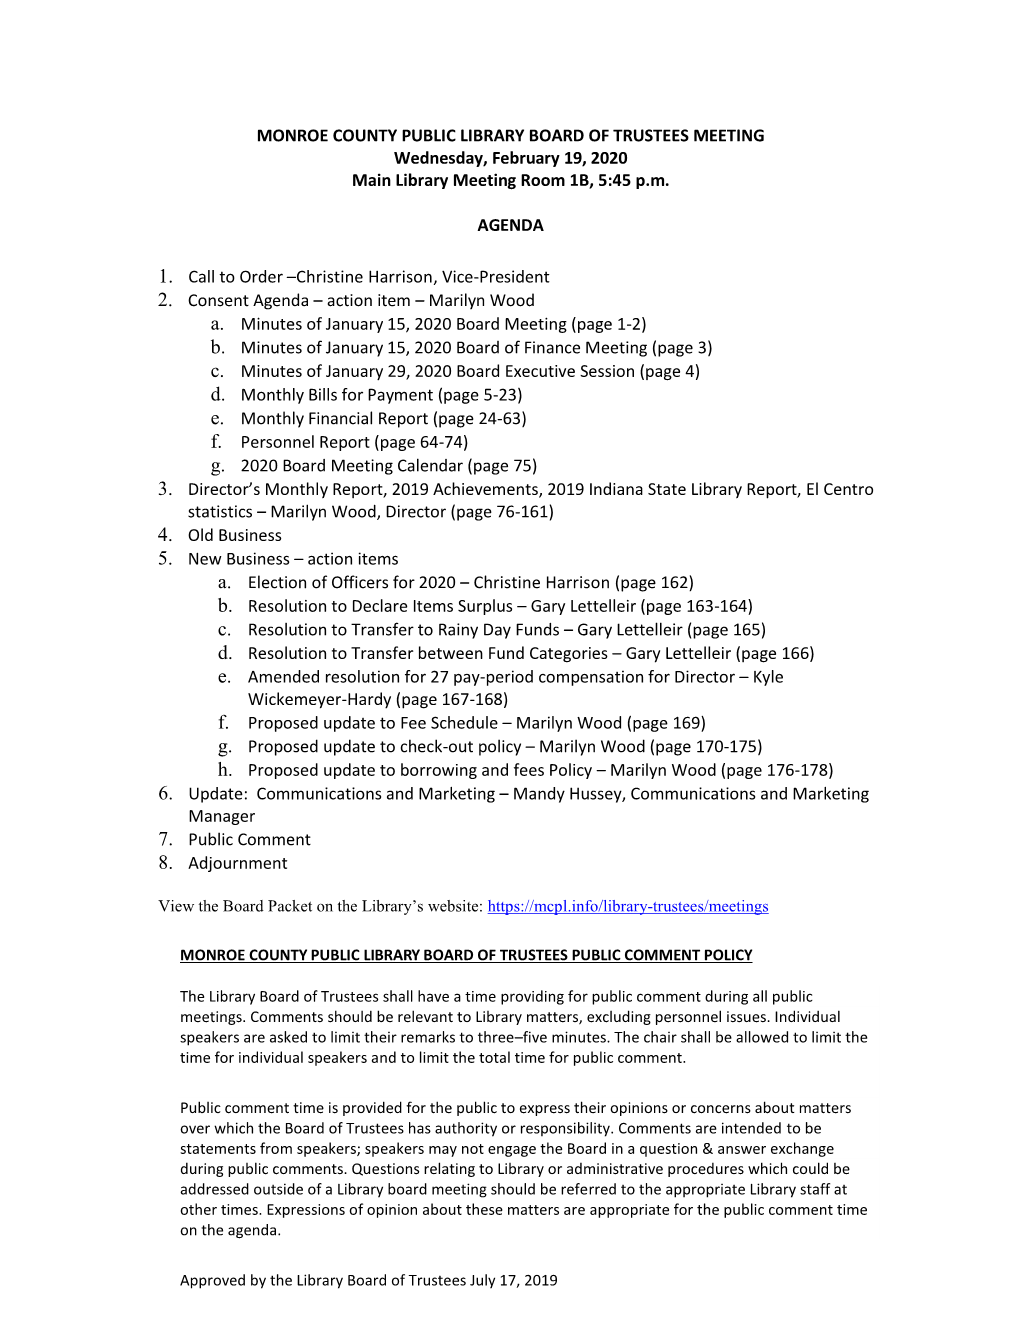 2020-02-19 Board of Trustees Meeting Packet